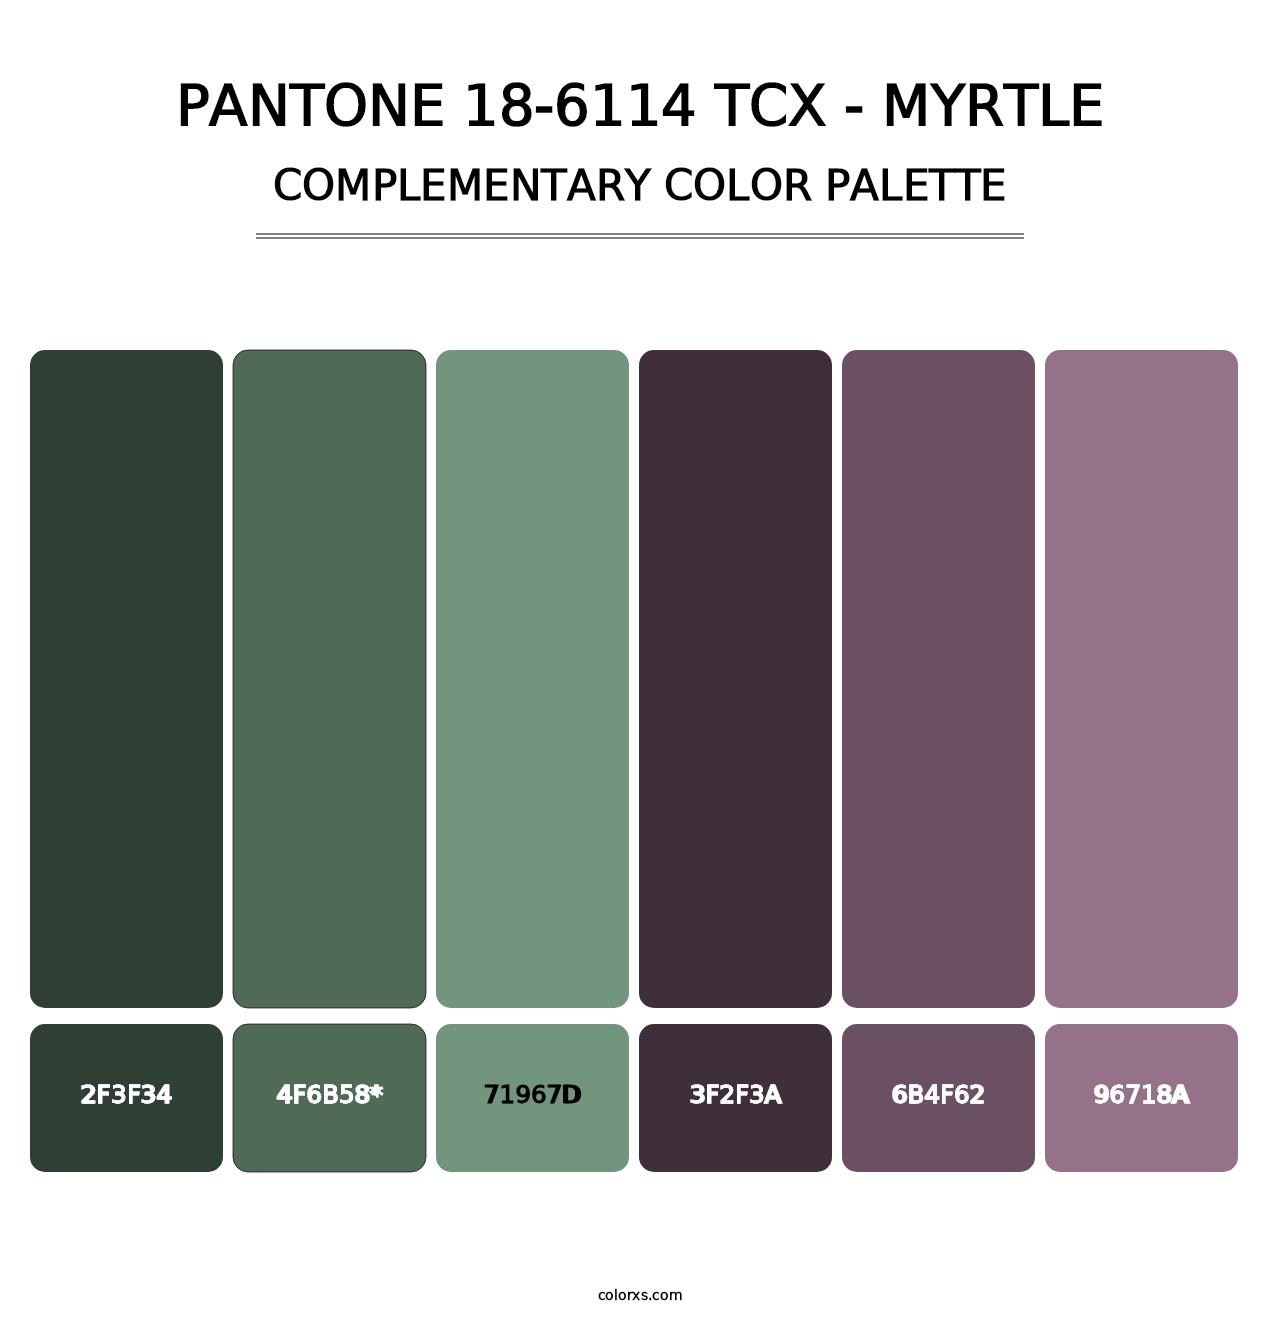 PANTONE 18-6114 TCX - Myrtle - Complementary Color Palette